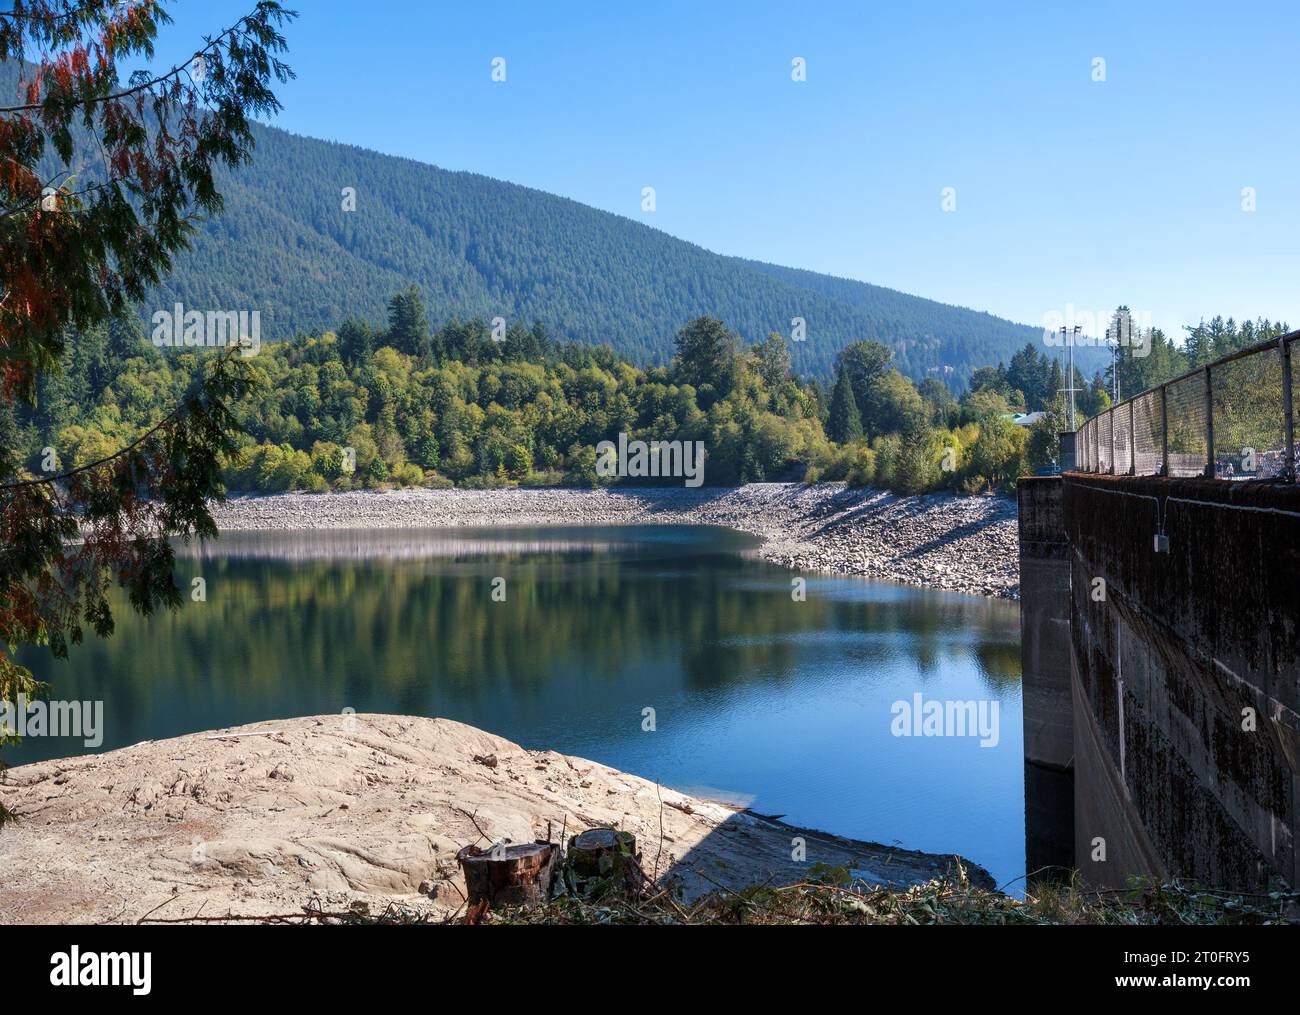 Lago panoramico con diga e montagne in autunno. Fornisce acqua dolce alla regione metropolitana di Vancouver. Acqua in basso livello o siccità. Vancouver nord, Capilano Foto Stock